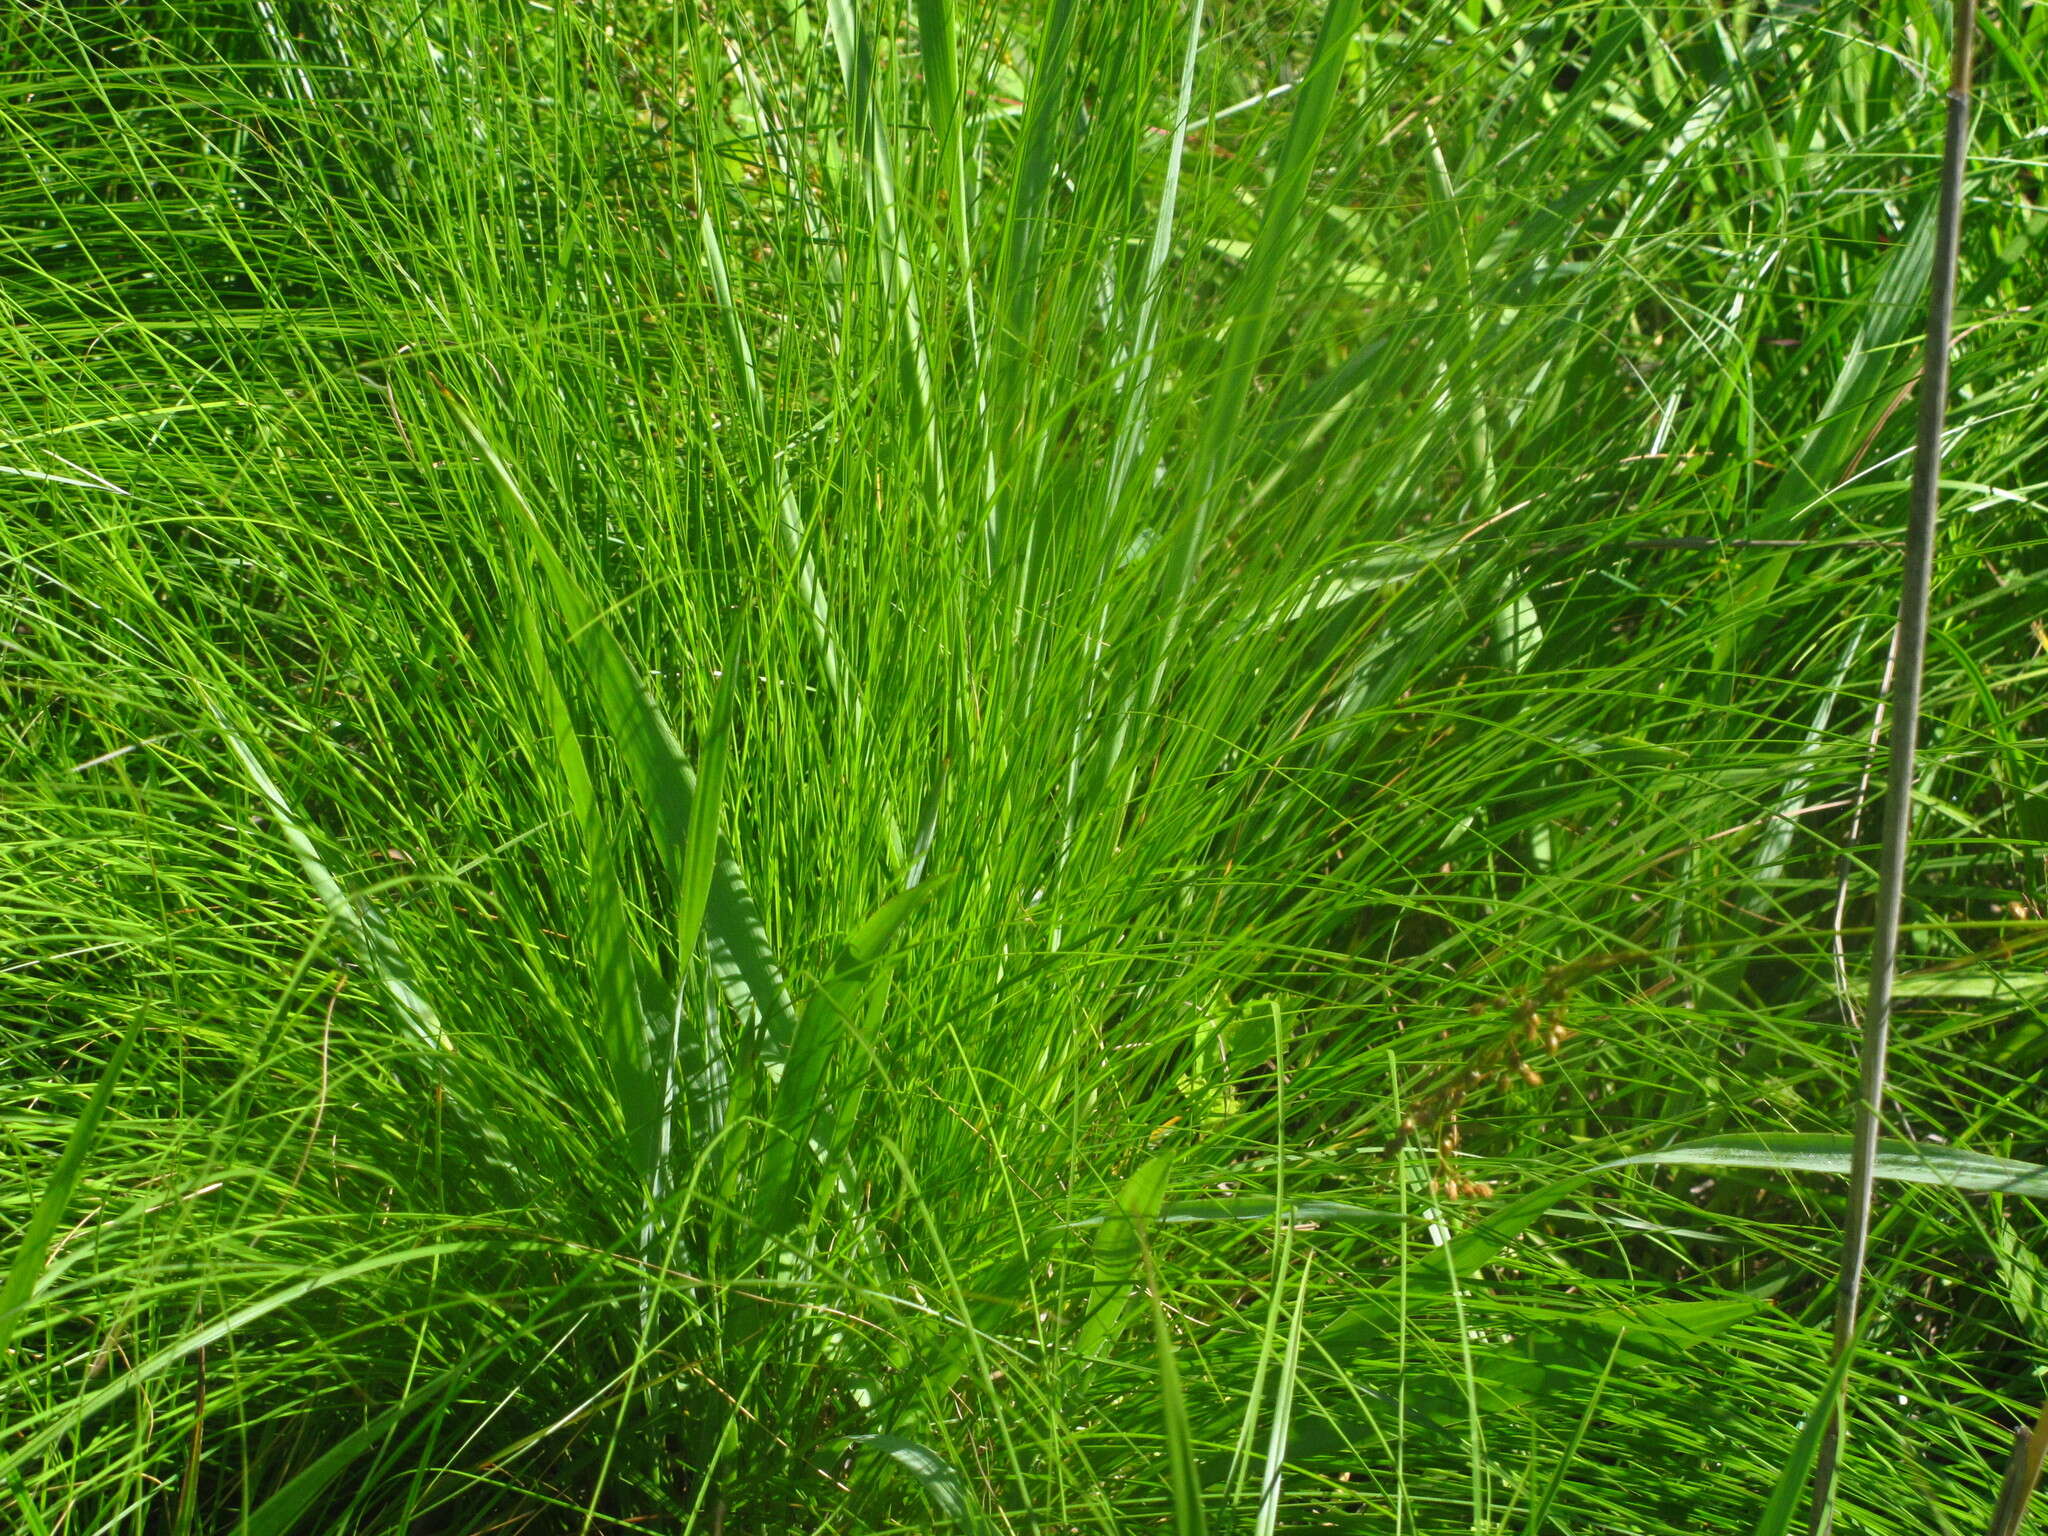 Image of prairie dropseed